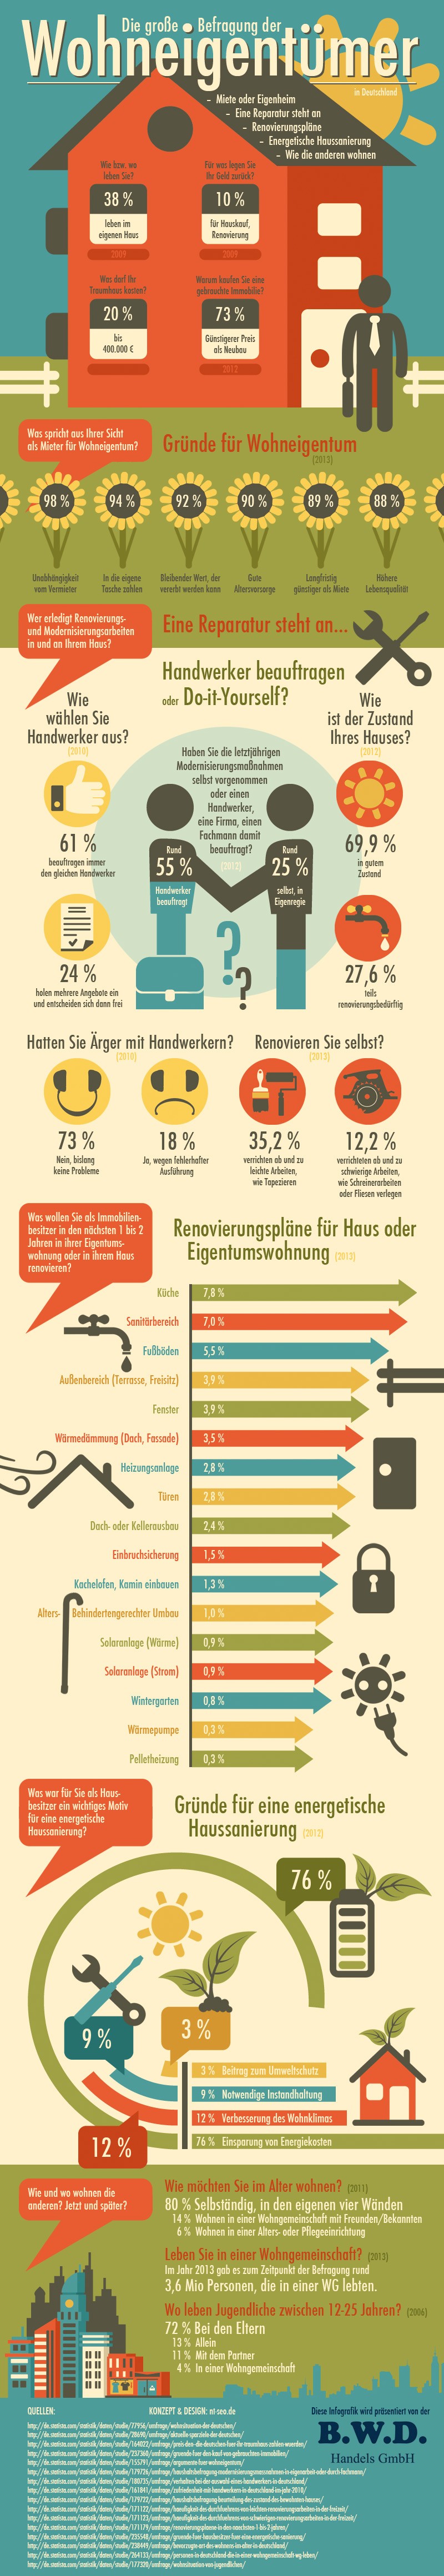 Infografik rund ums Thema Wohneigentum, Renovierung und Sanierung